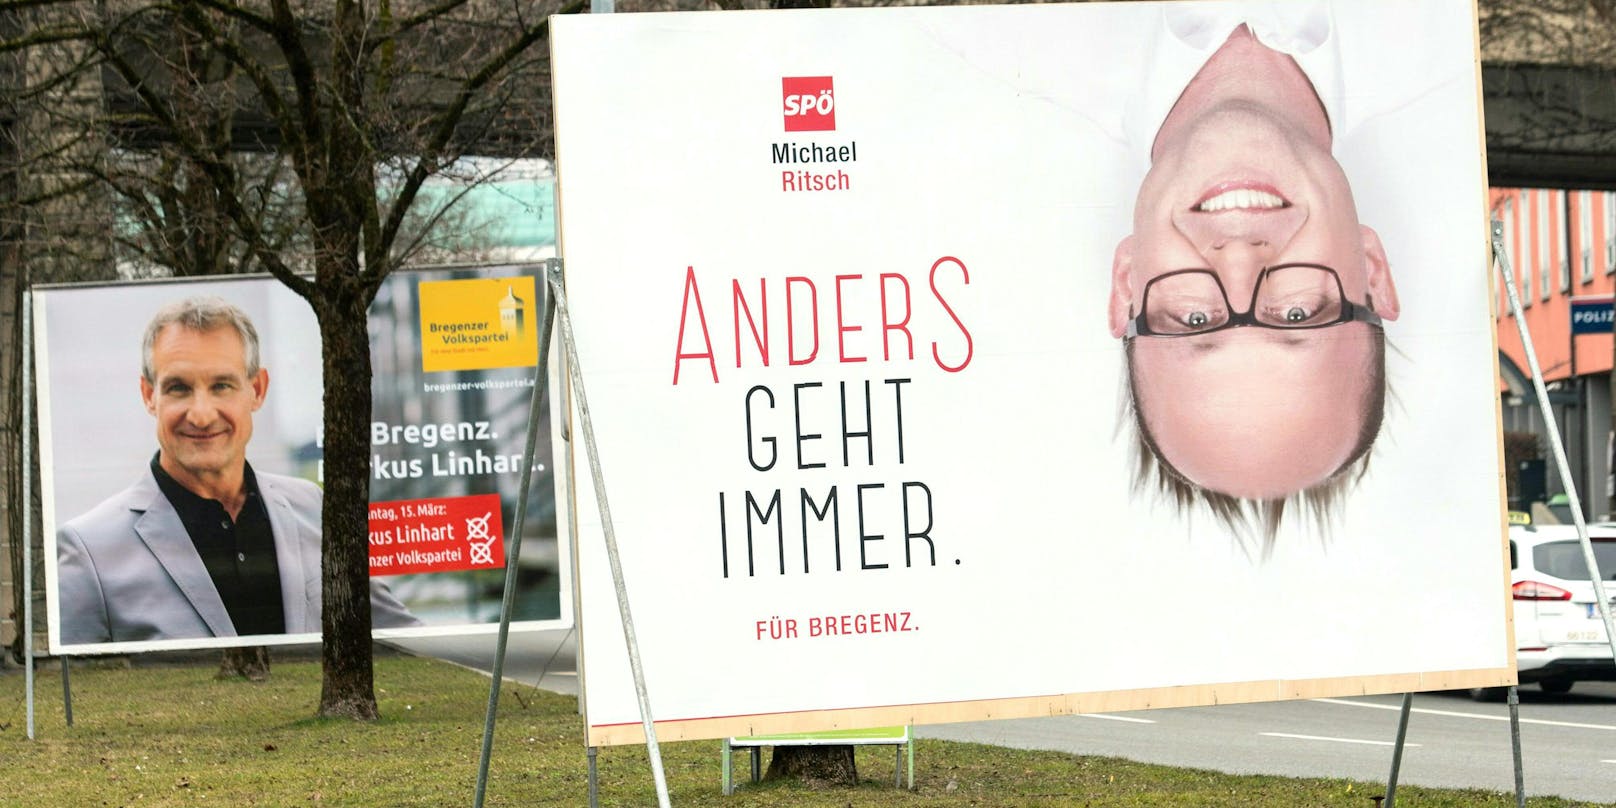 In Bregenz kommt es in zwei Wochen zur Stichwahl zwischen dem amtierenden Bürgermeister Markus Linhart (ÖVP) und Michael Ritsch (SPÖ-nah).